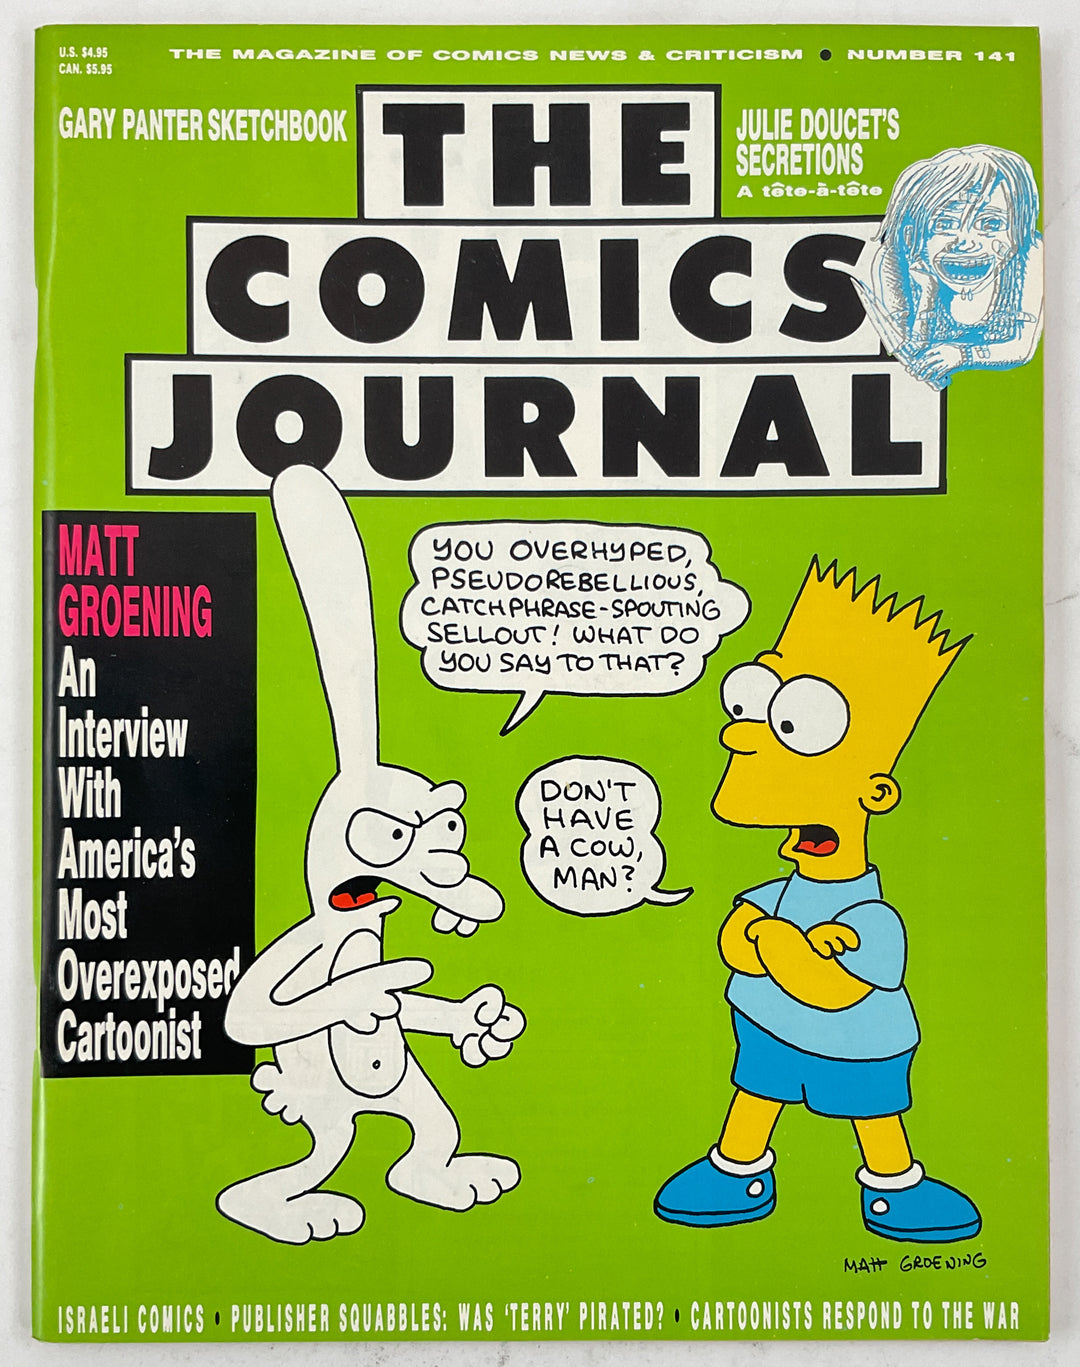 The Comics Journal #141 - Matt Groening Interview